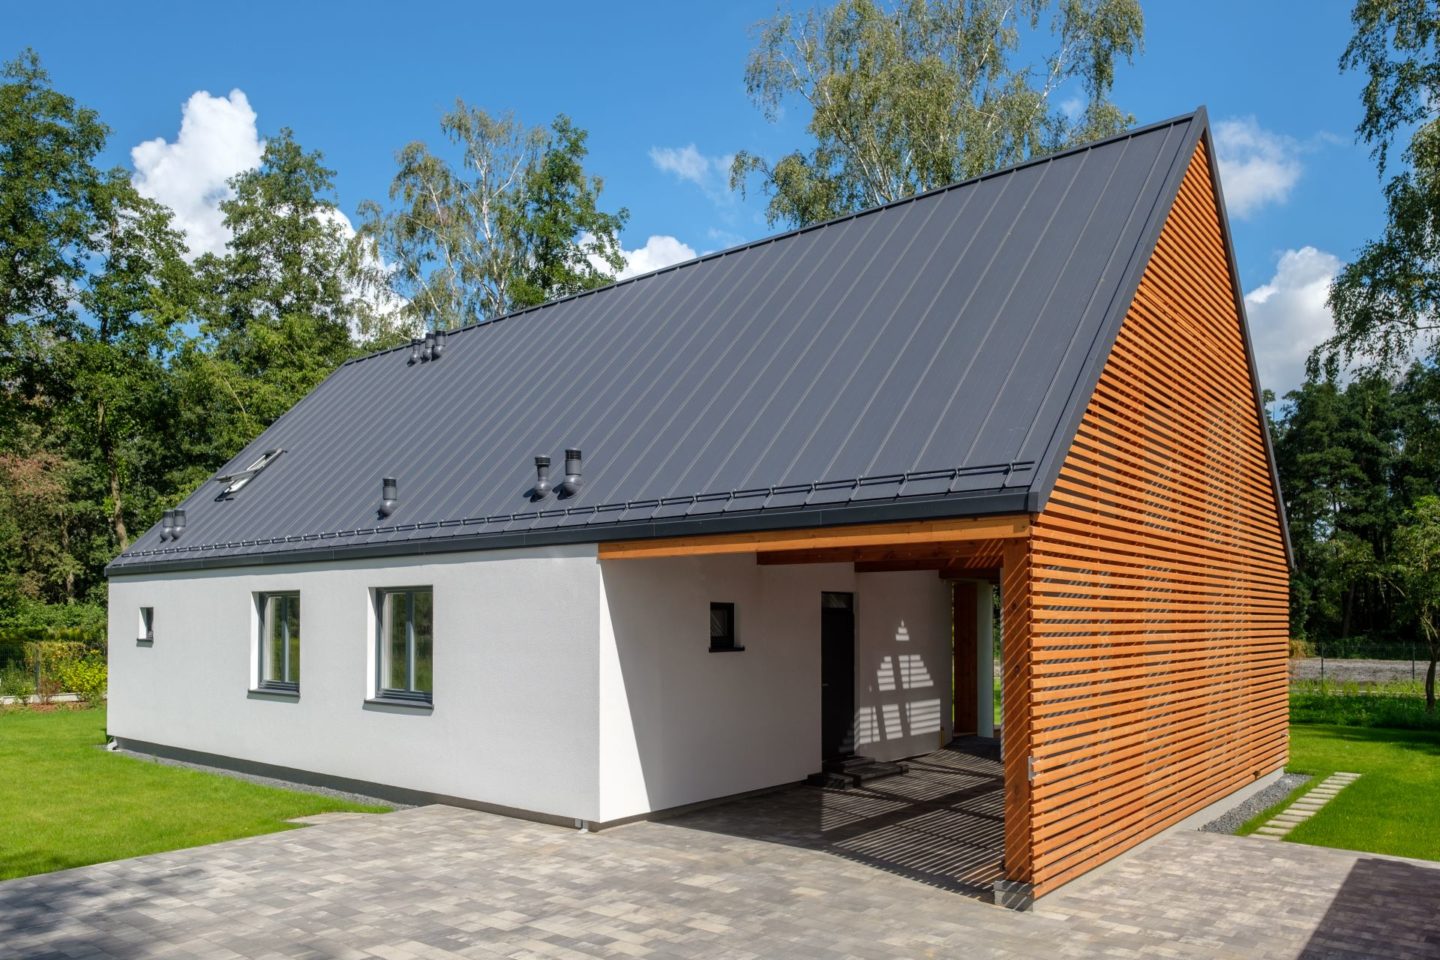 ażurowa ściana z drewna - Domy modułowe, domy segmentowe, dom modułowy całoroczny, dom kanadyjski - simplehouse.pl